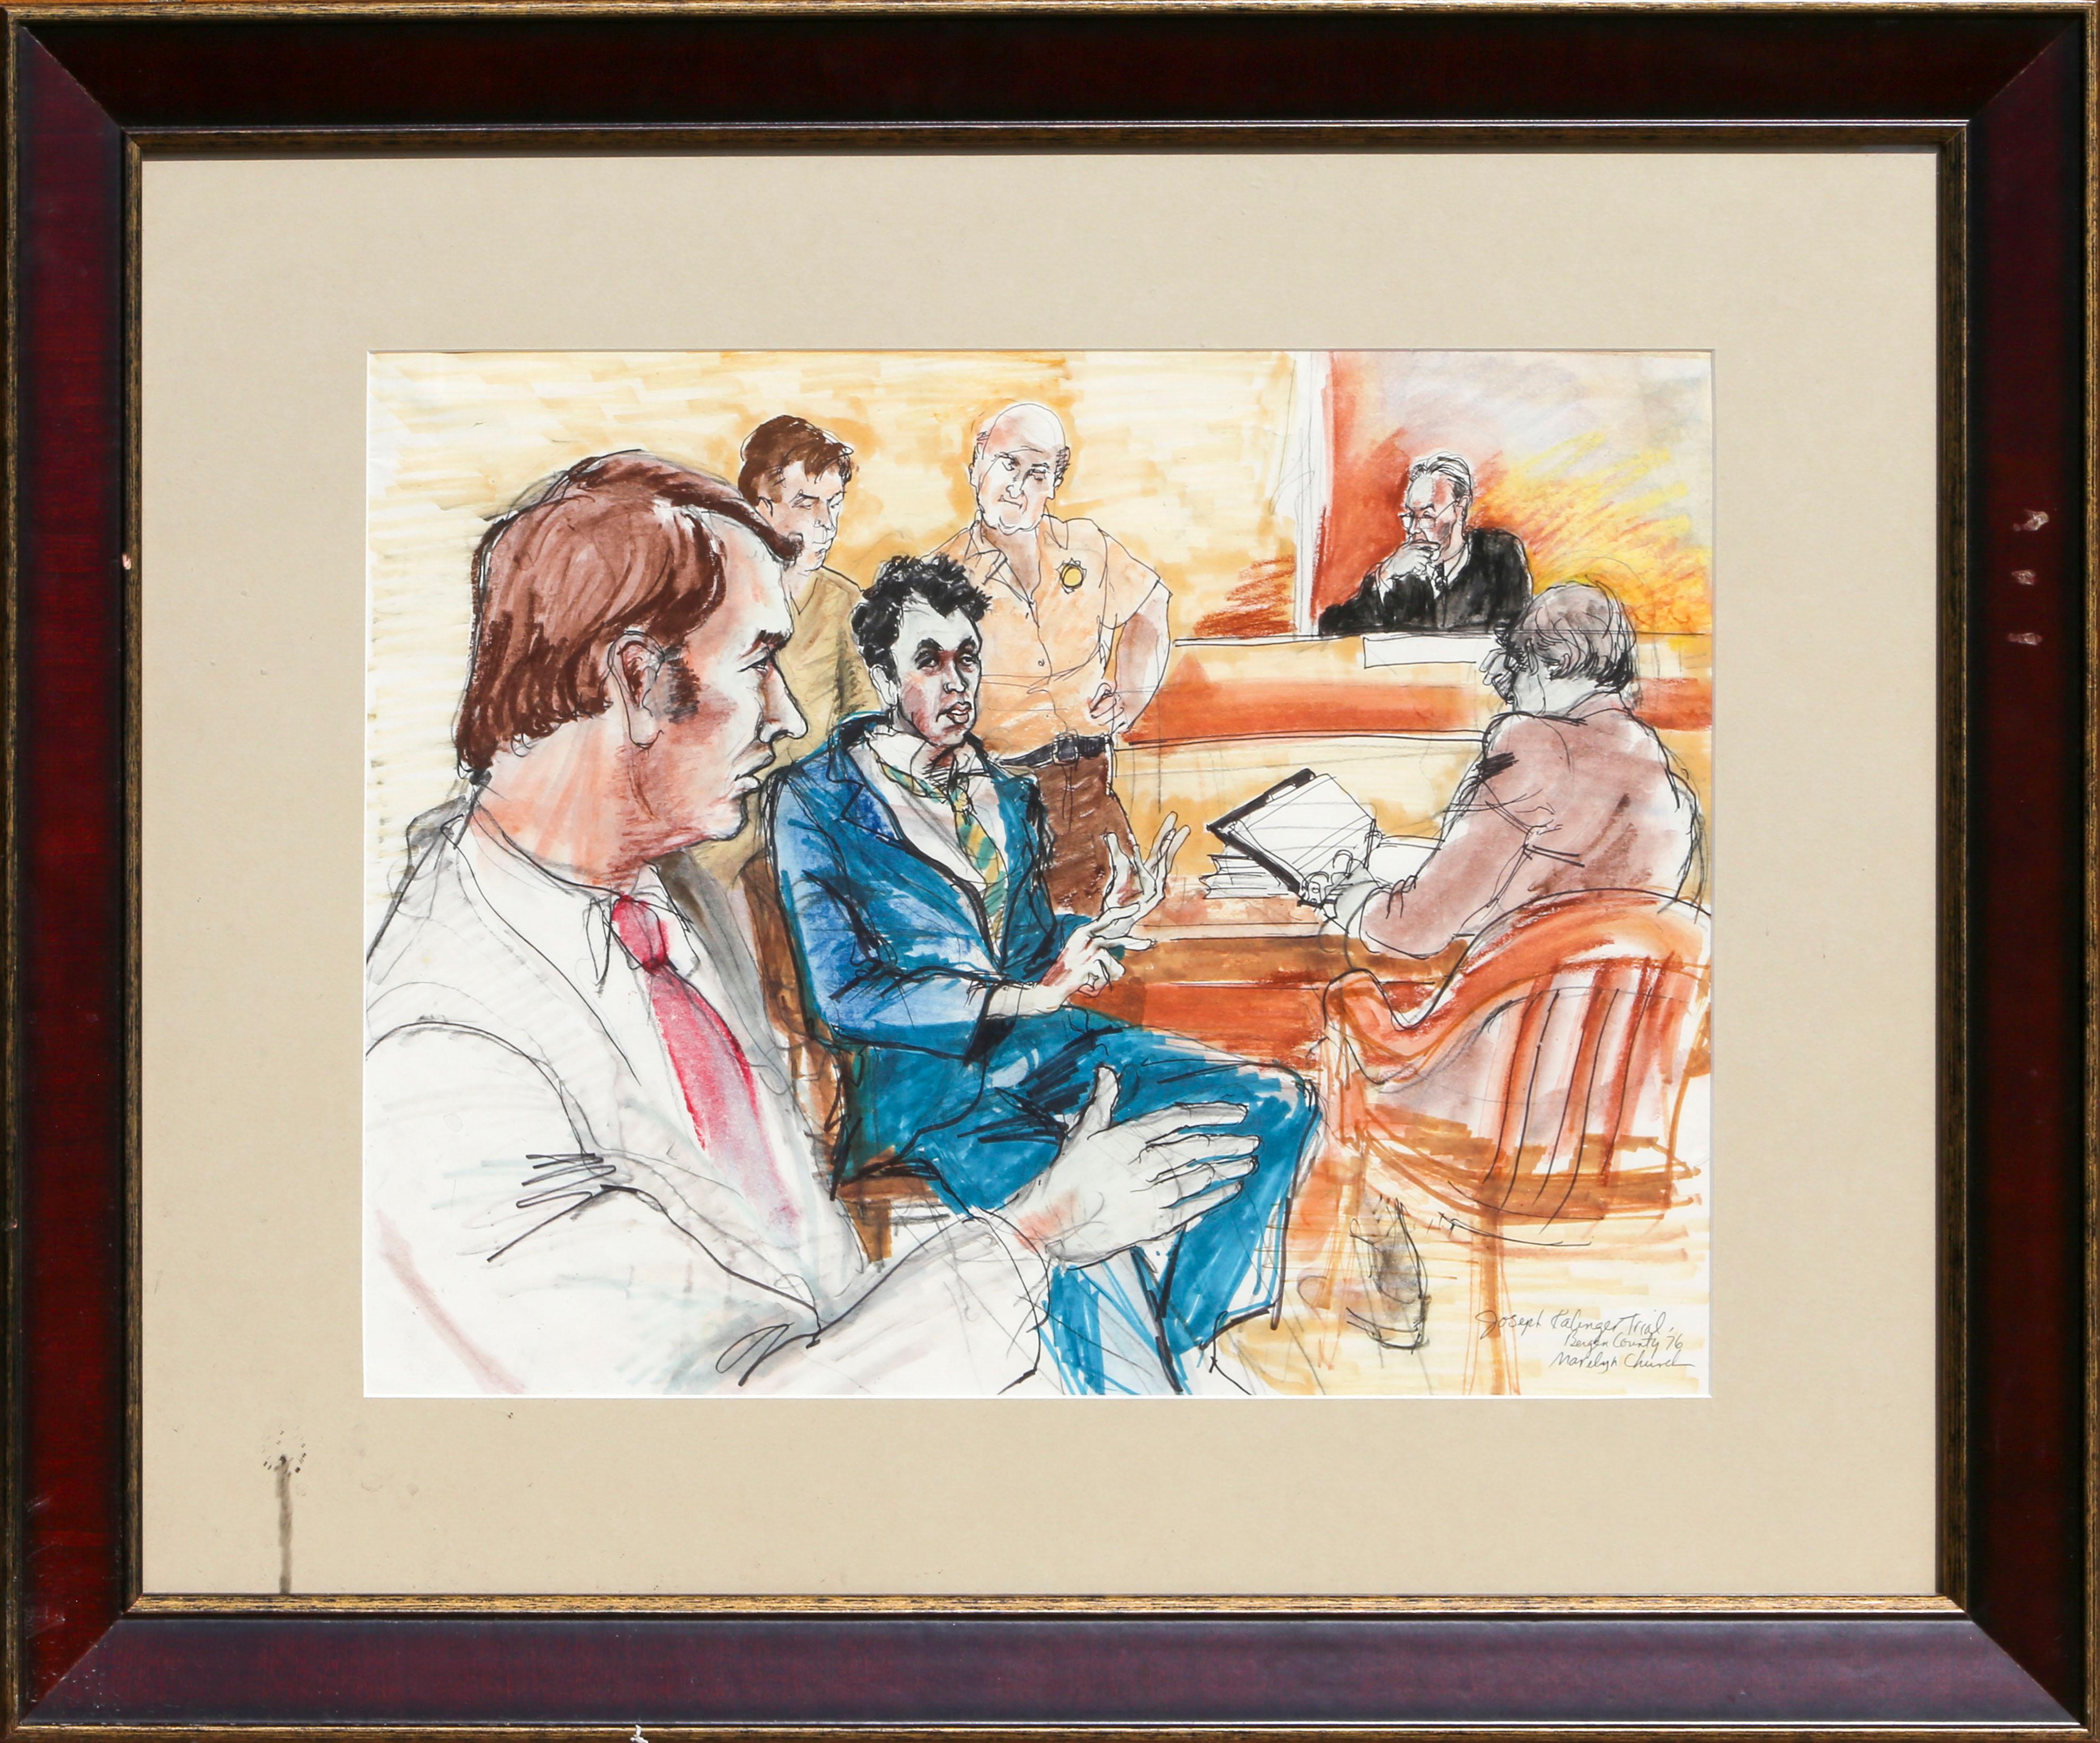 Jean Harris im Zeugenstand, Bleistift und Tinte auf Papier von Marilyn Church